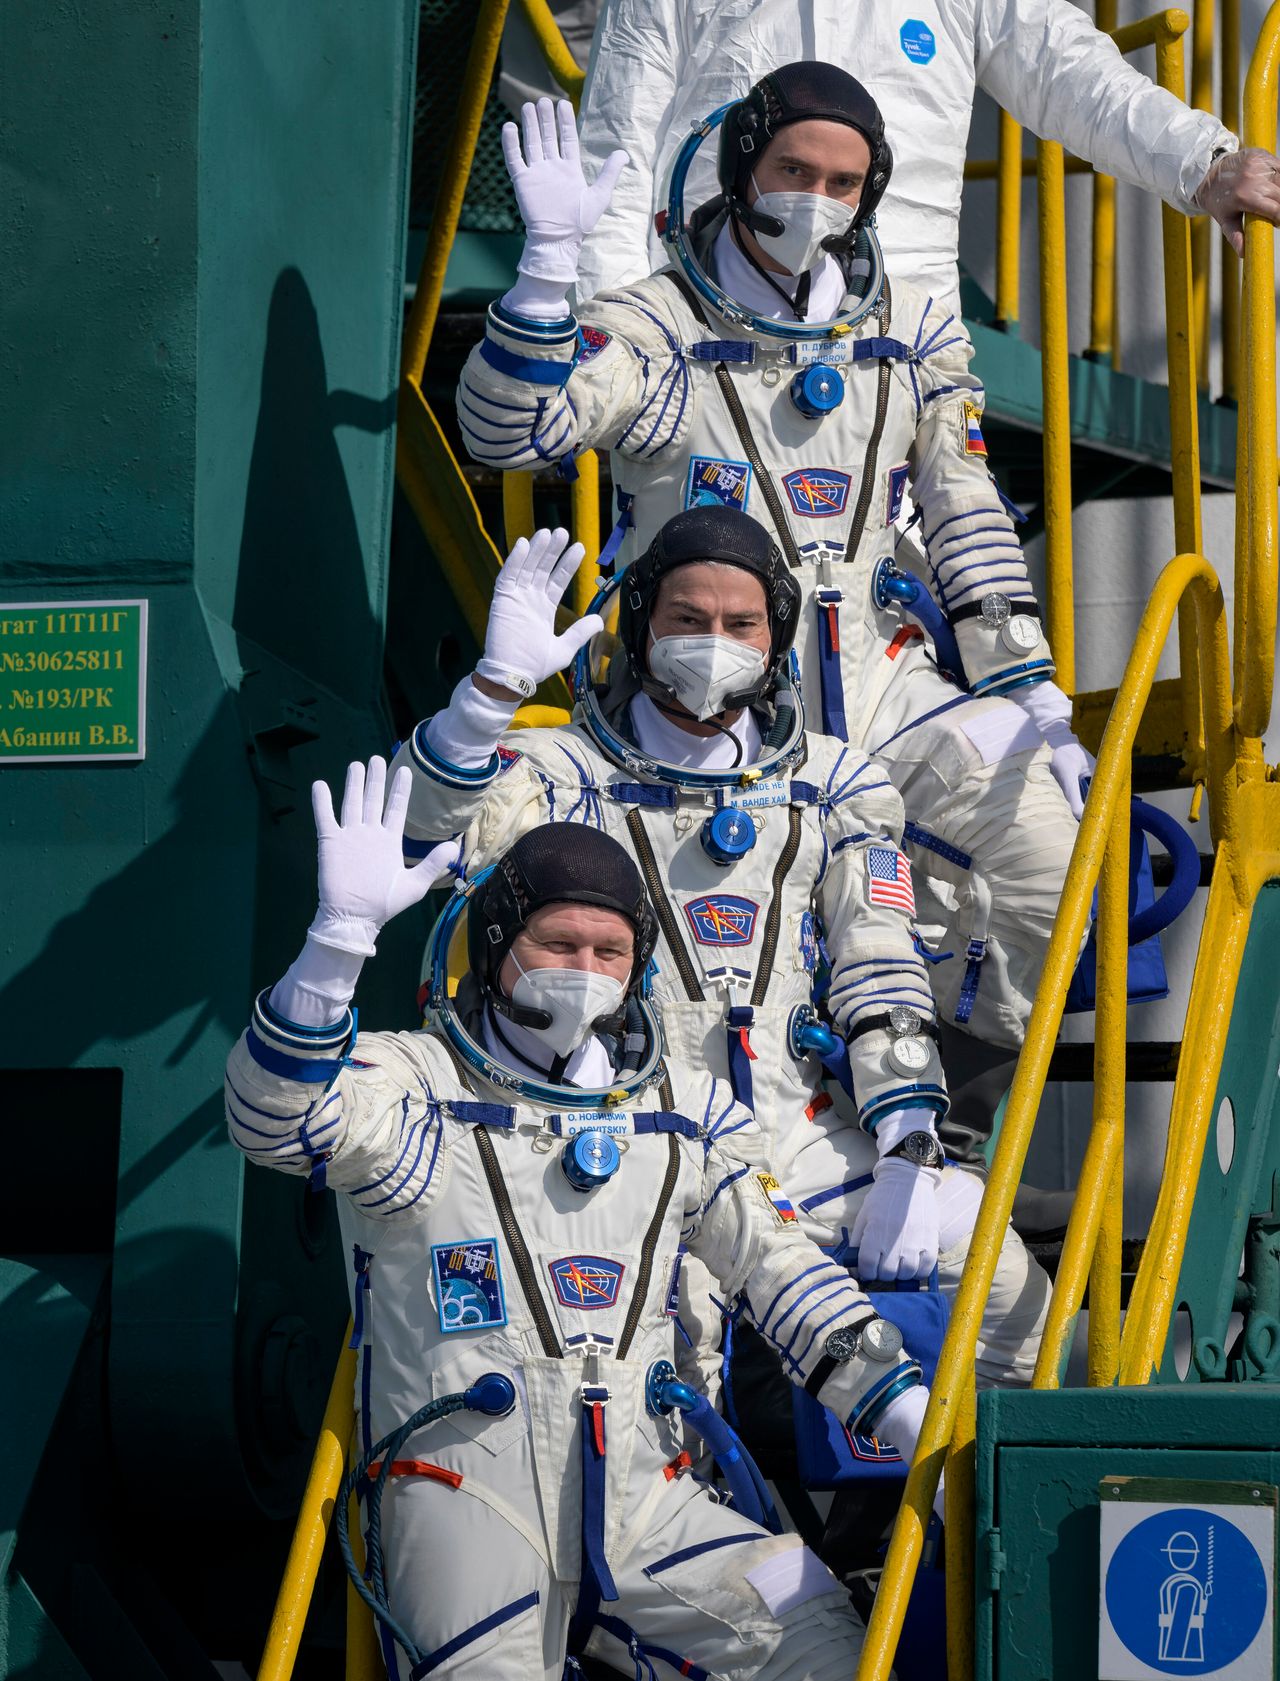 Σε αυτήν την φωτογραφία που παρέχεται από τη NASA, ο Ρώσος κοσμοναύτης Πιότρ Ντουμπρόφ, ο κορυφαίος, ο αστροναύτης της NASA Mαρκ Βάντε Χάι και ο Ρώσος κοσμοναύτης Oλεγκ Noβίτσκι αποχαιρετούν τον κόσμο πριν επιβιβαστούν στο διαστημόπλοιο Soyuz MS-18 για εκτόξευση, Παρασκευή 9 Απριλίου 2021, στο Κοσμοδρόμιο Μπαϊκονούρ στο Καζακστάν.